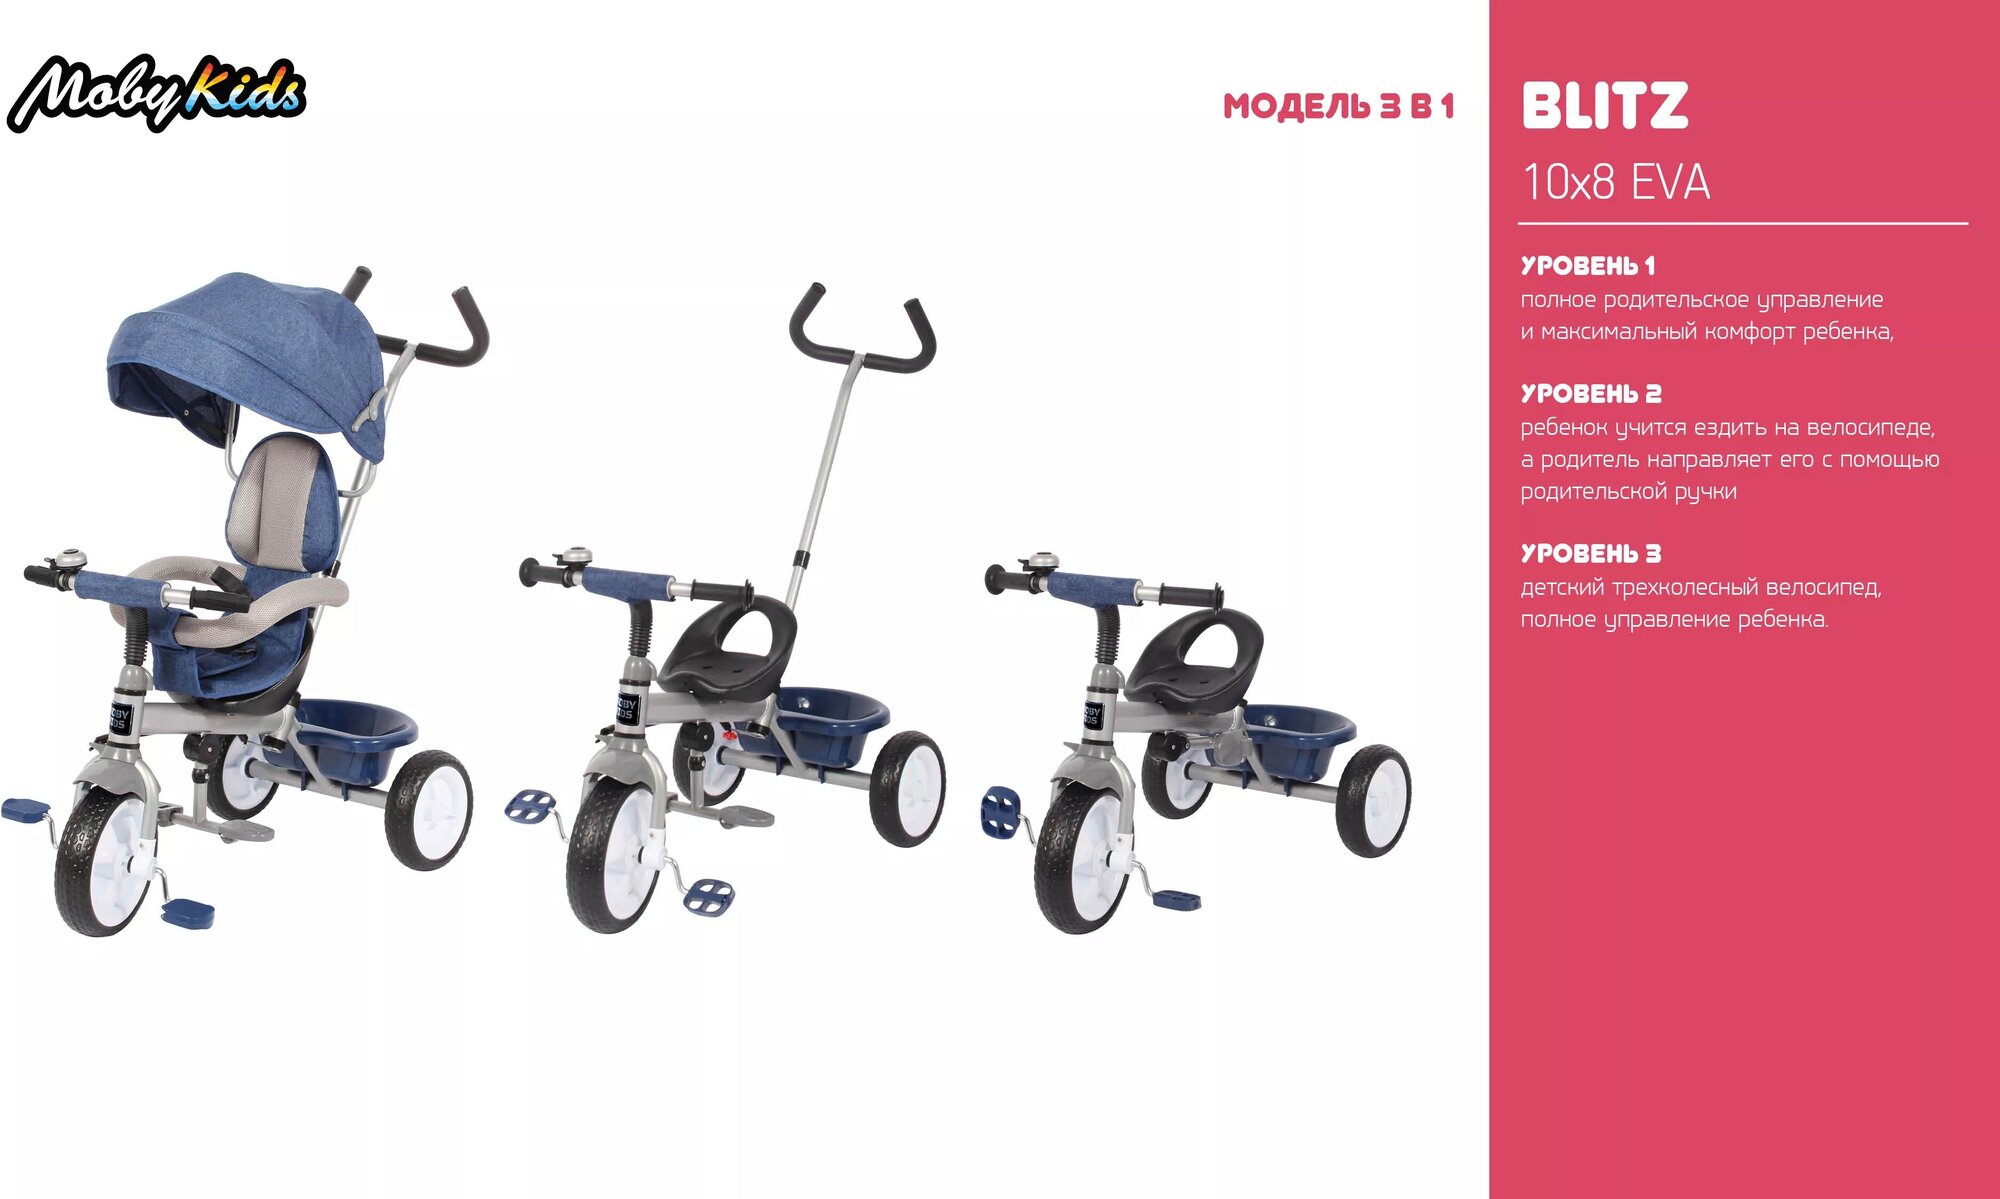 Трехколесный велосипед 3 в 1 Moby Kids Blitz бежевый